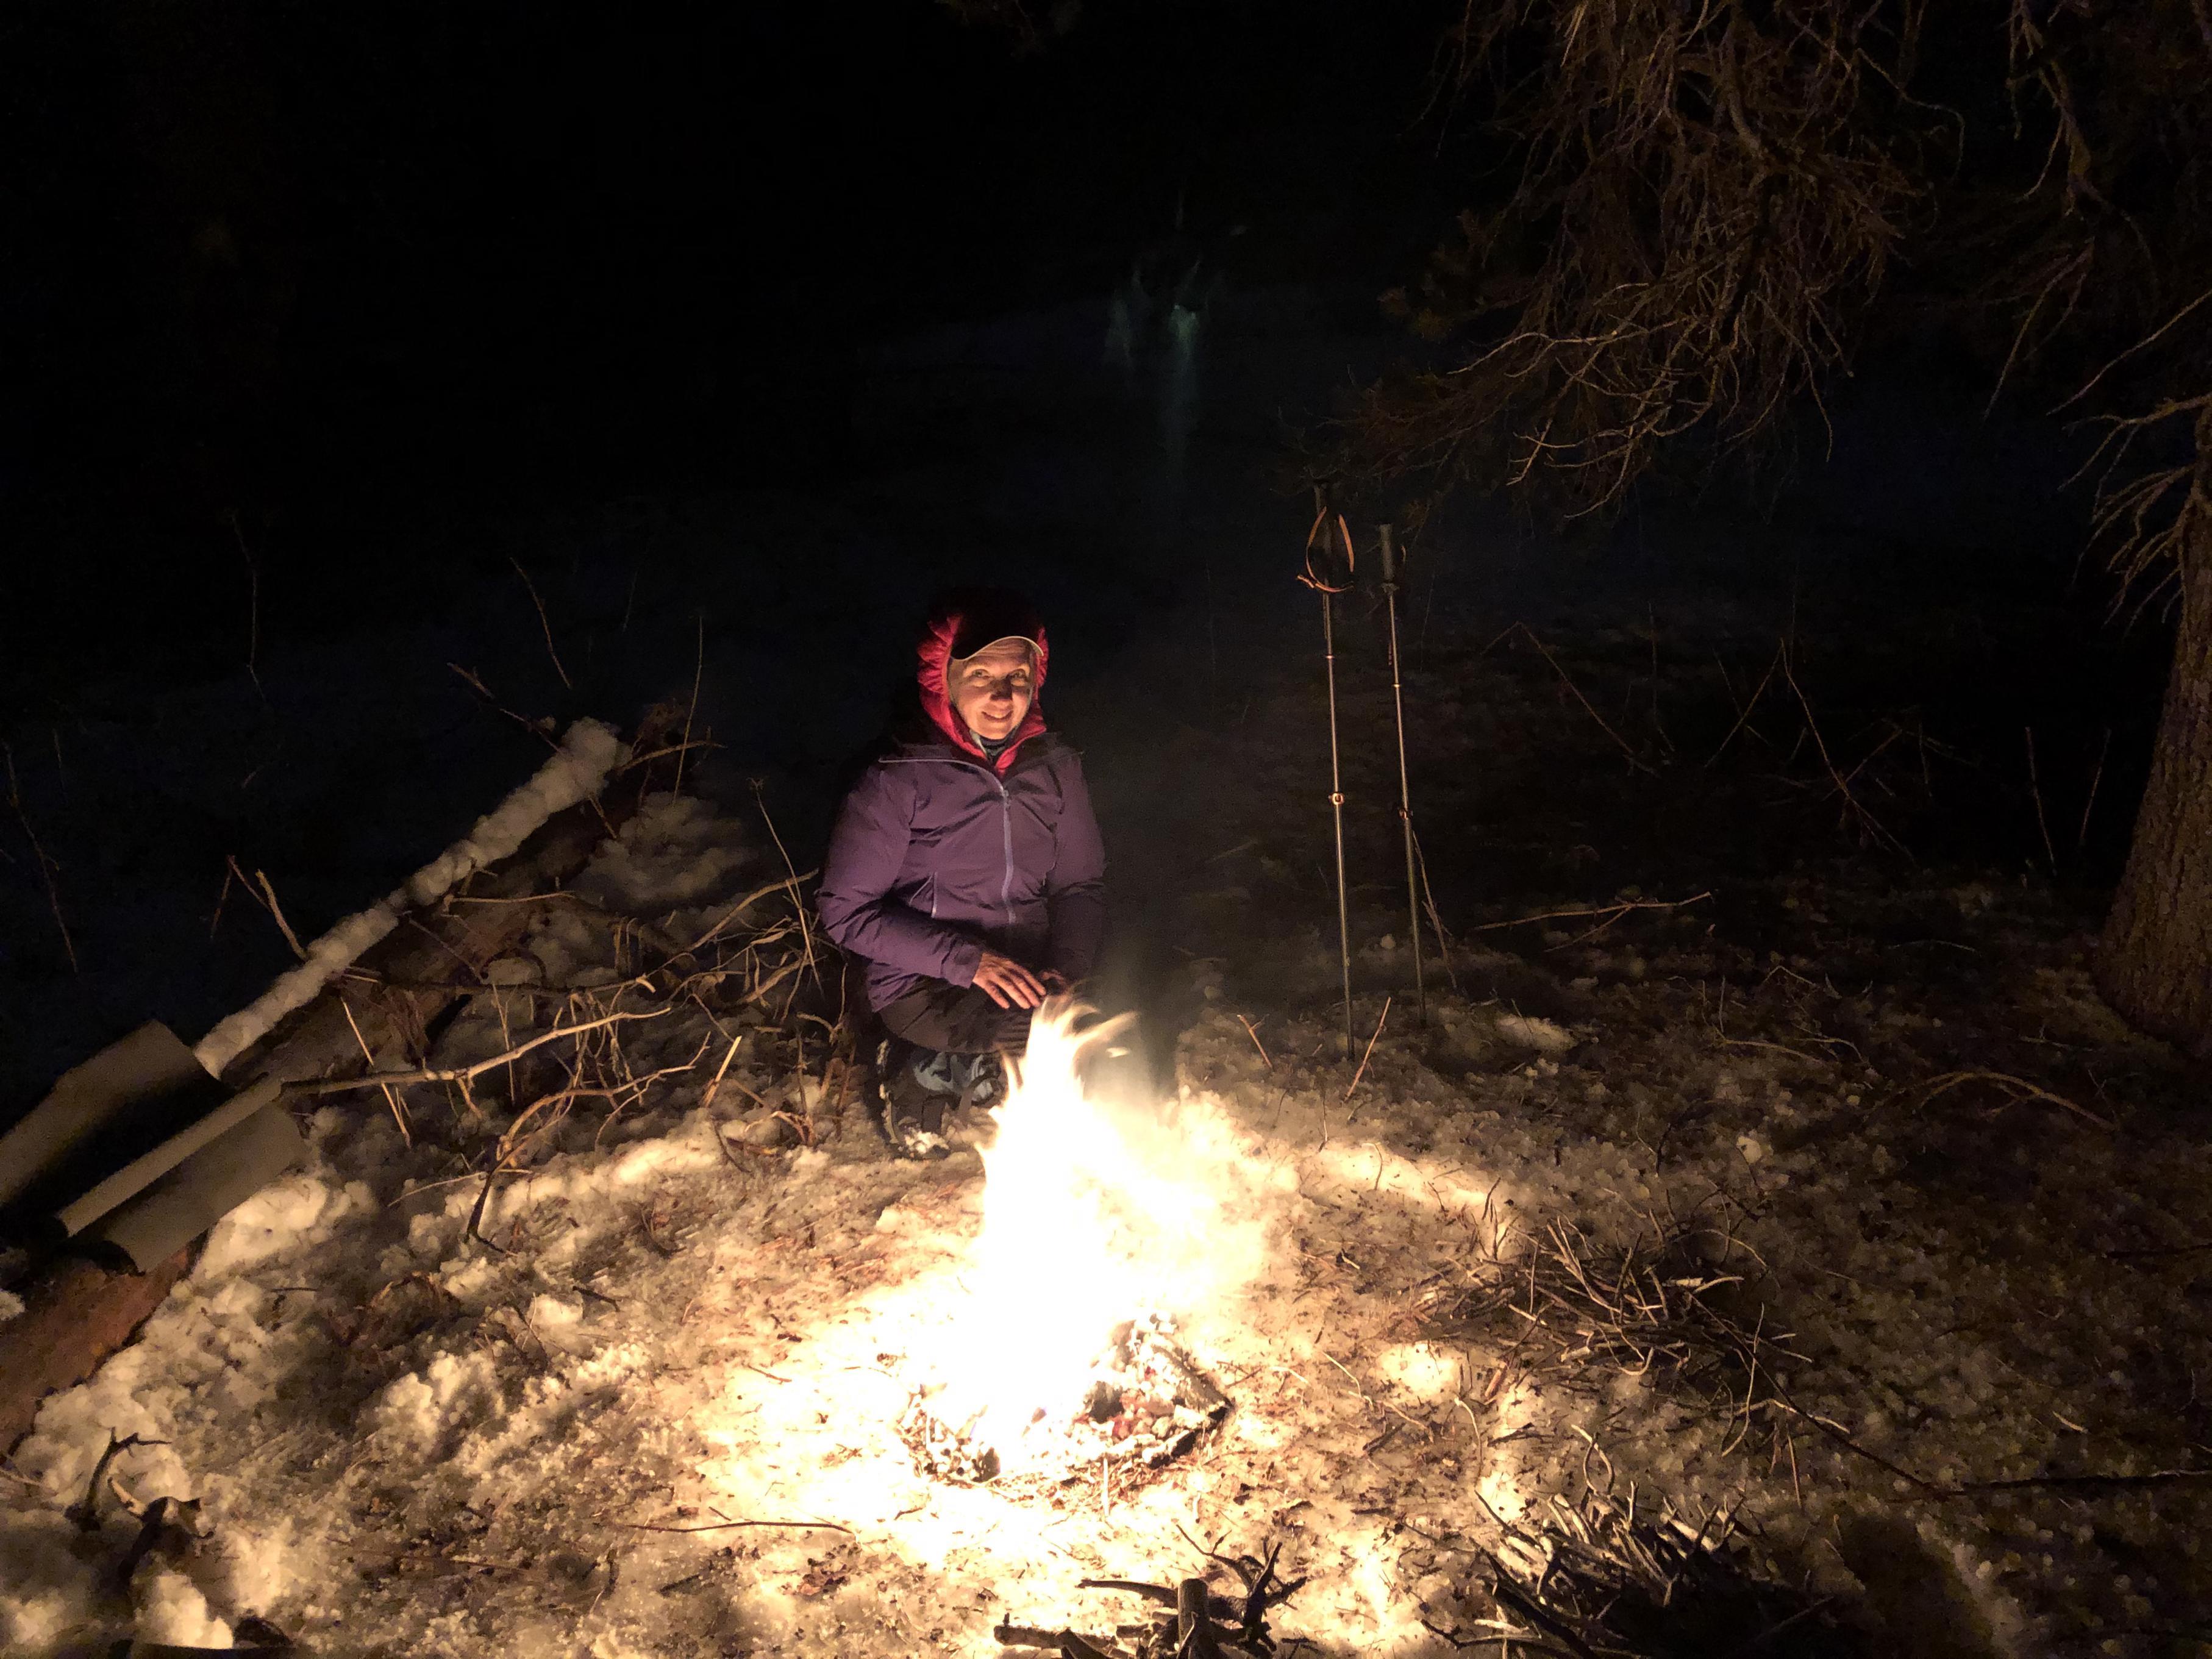 Gela at campfire